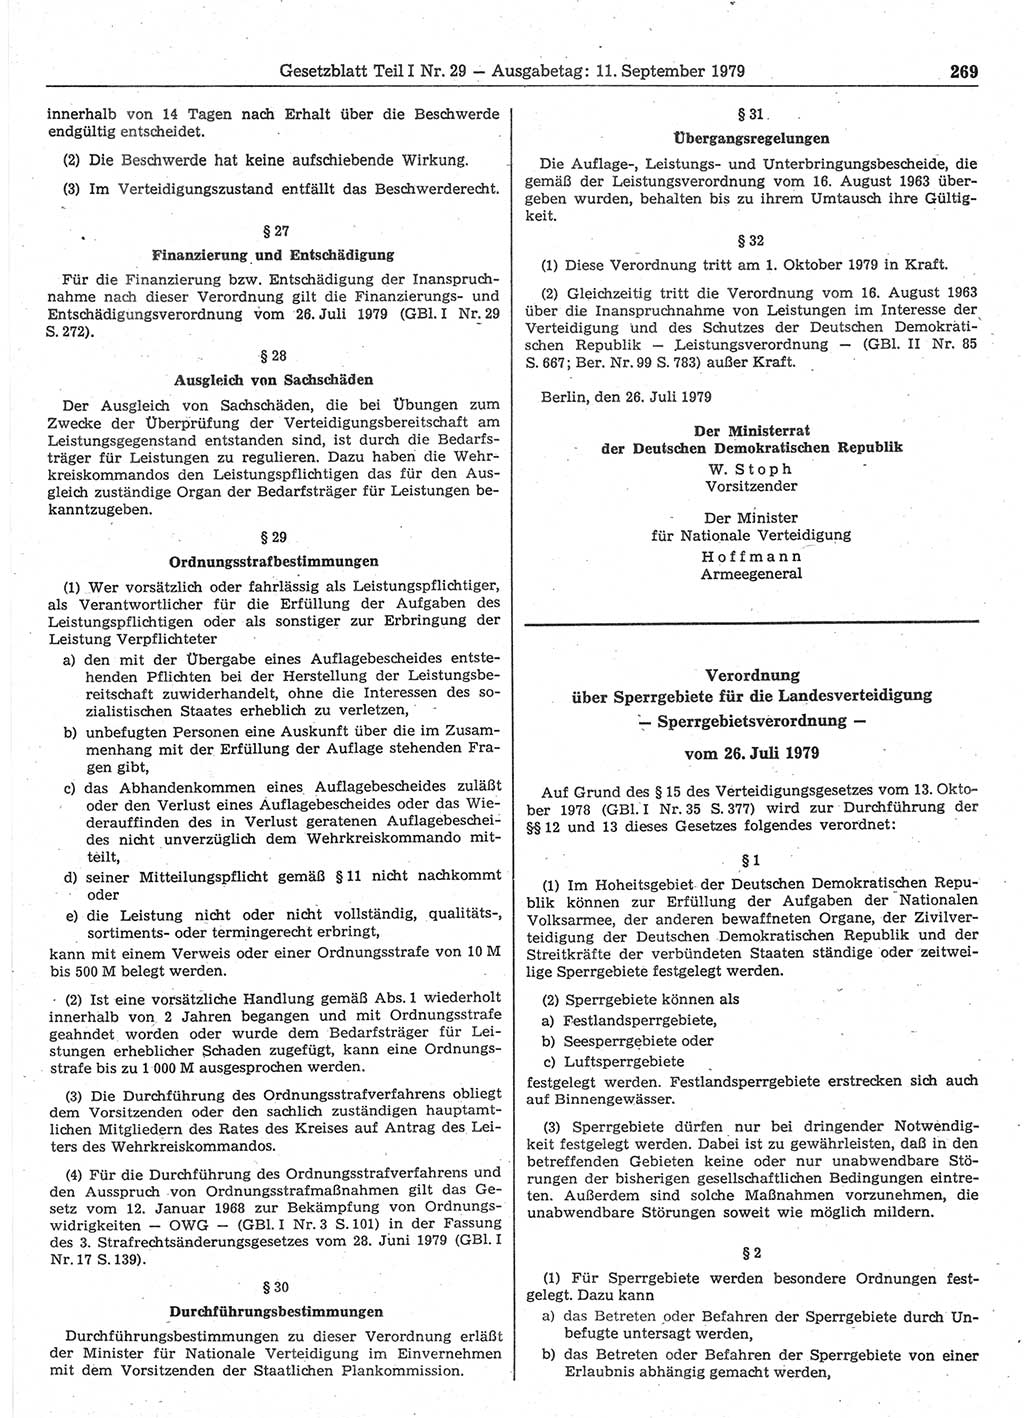 Gesetzblatt (GBl.) der Deutschen Demokratischen Republik (DDR) Teil Ⅰ 1979, Seite 269 (GBl. DDR Ⅰ 1979, S. 269)